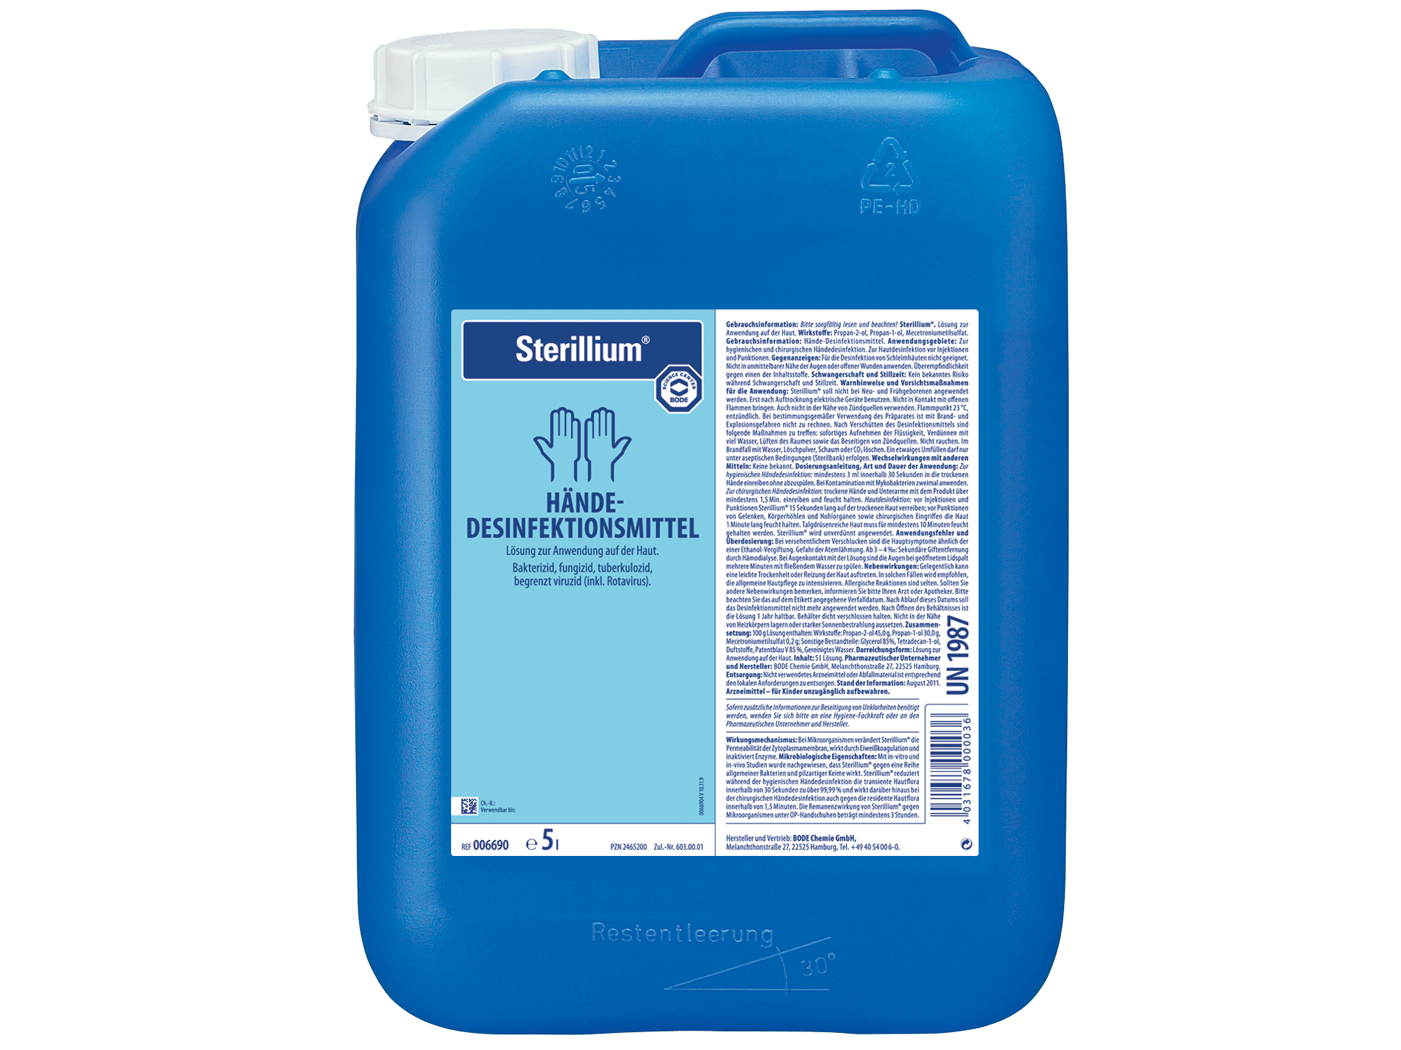 Hartmann Sterillium hand disinfectant